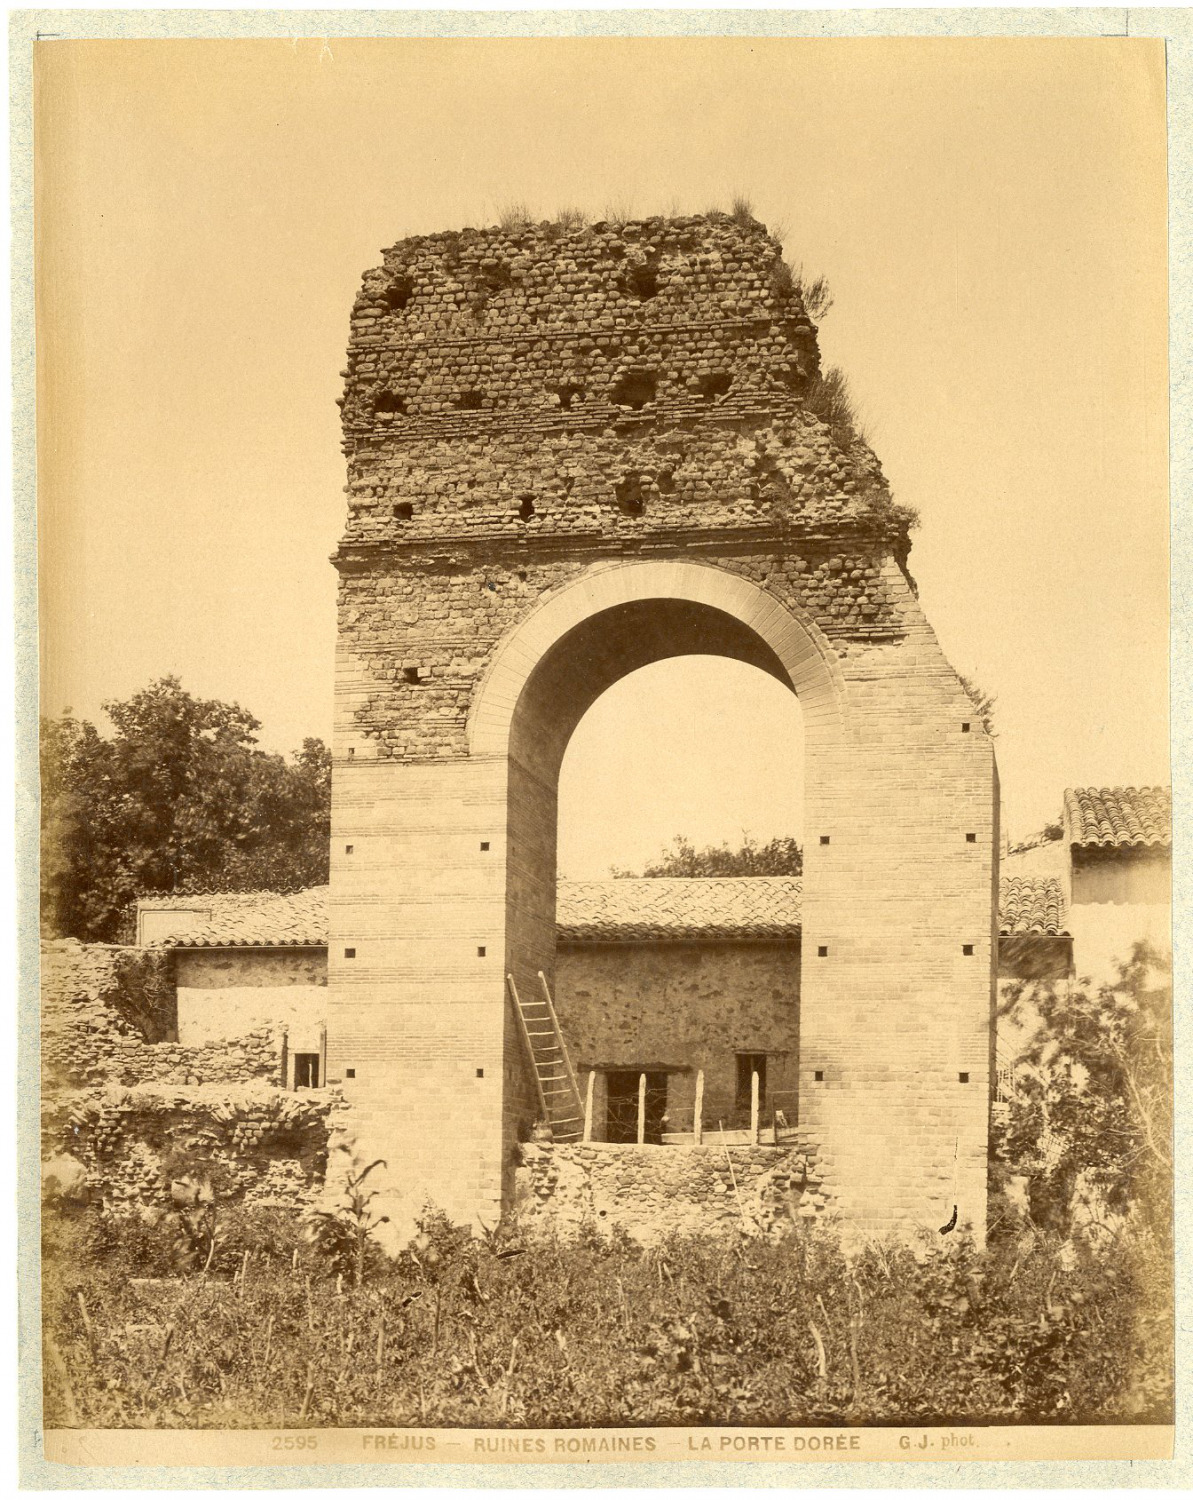 G.J. France, Fréjus, Roman ruins, La Porte Dorée vintage albumen print.  